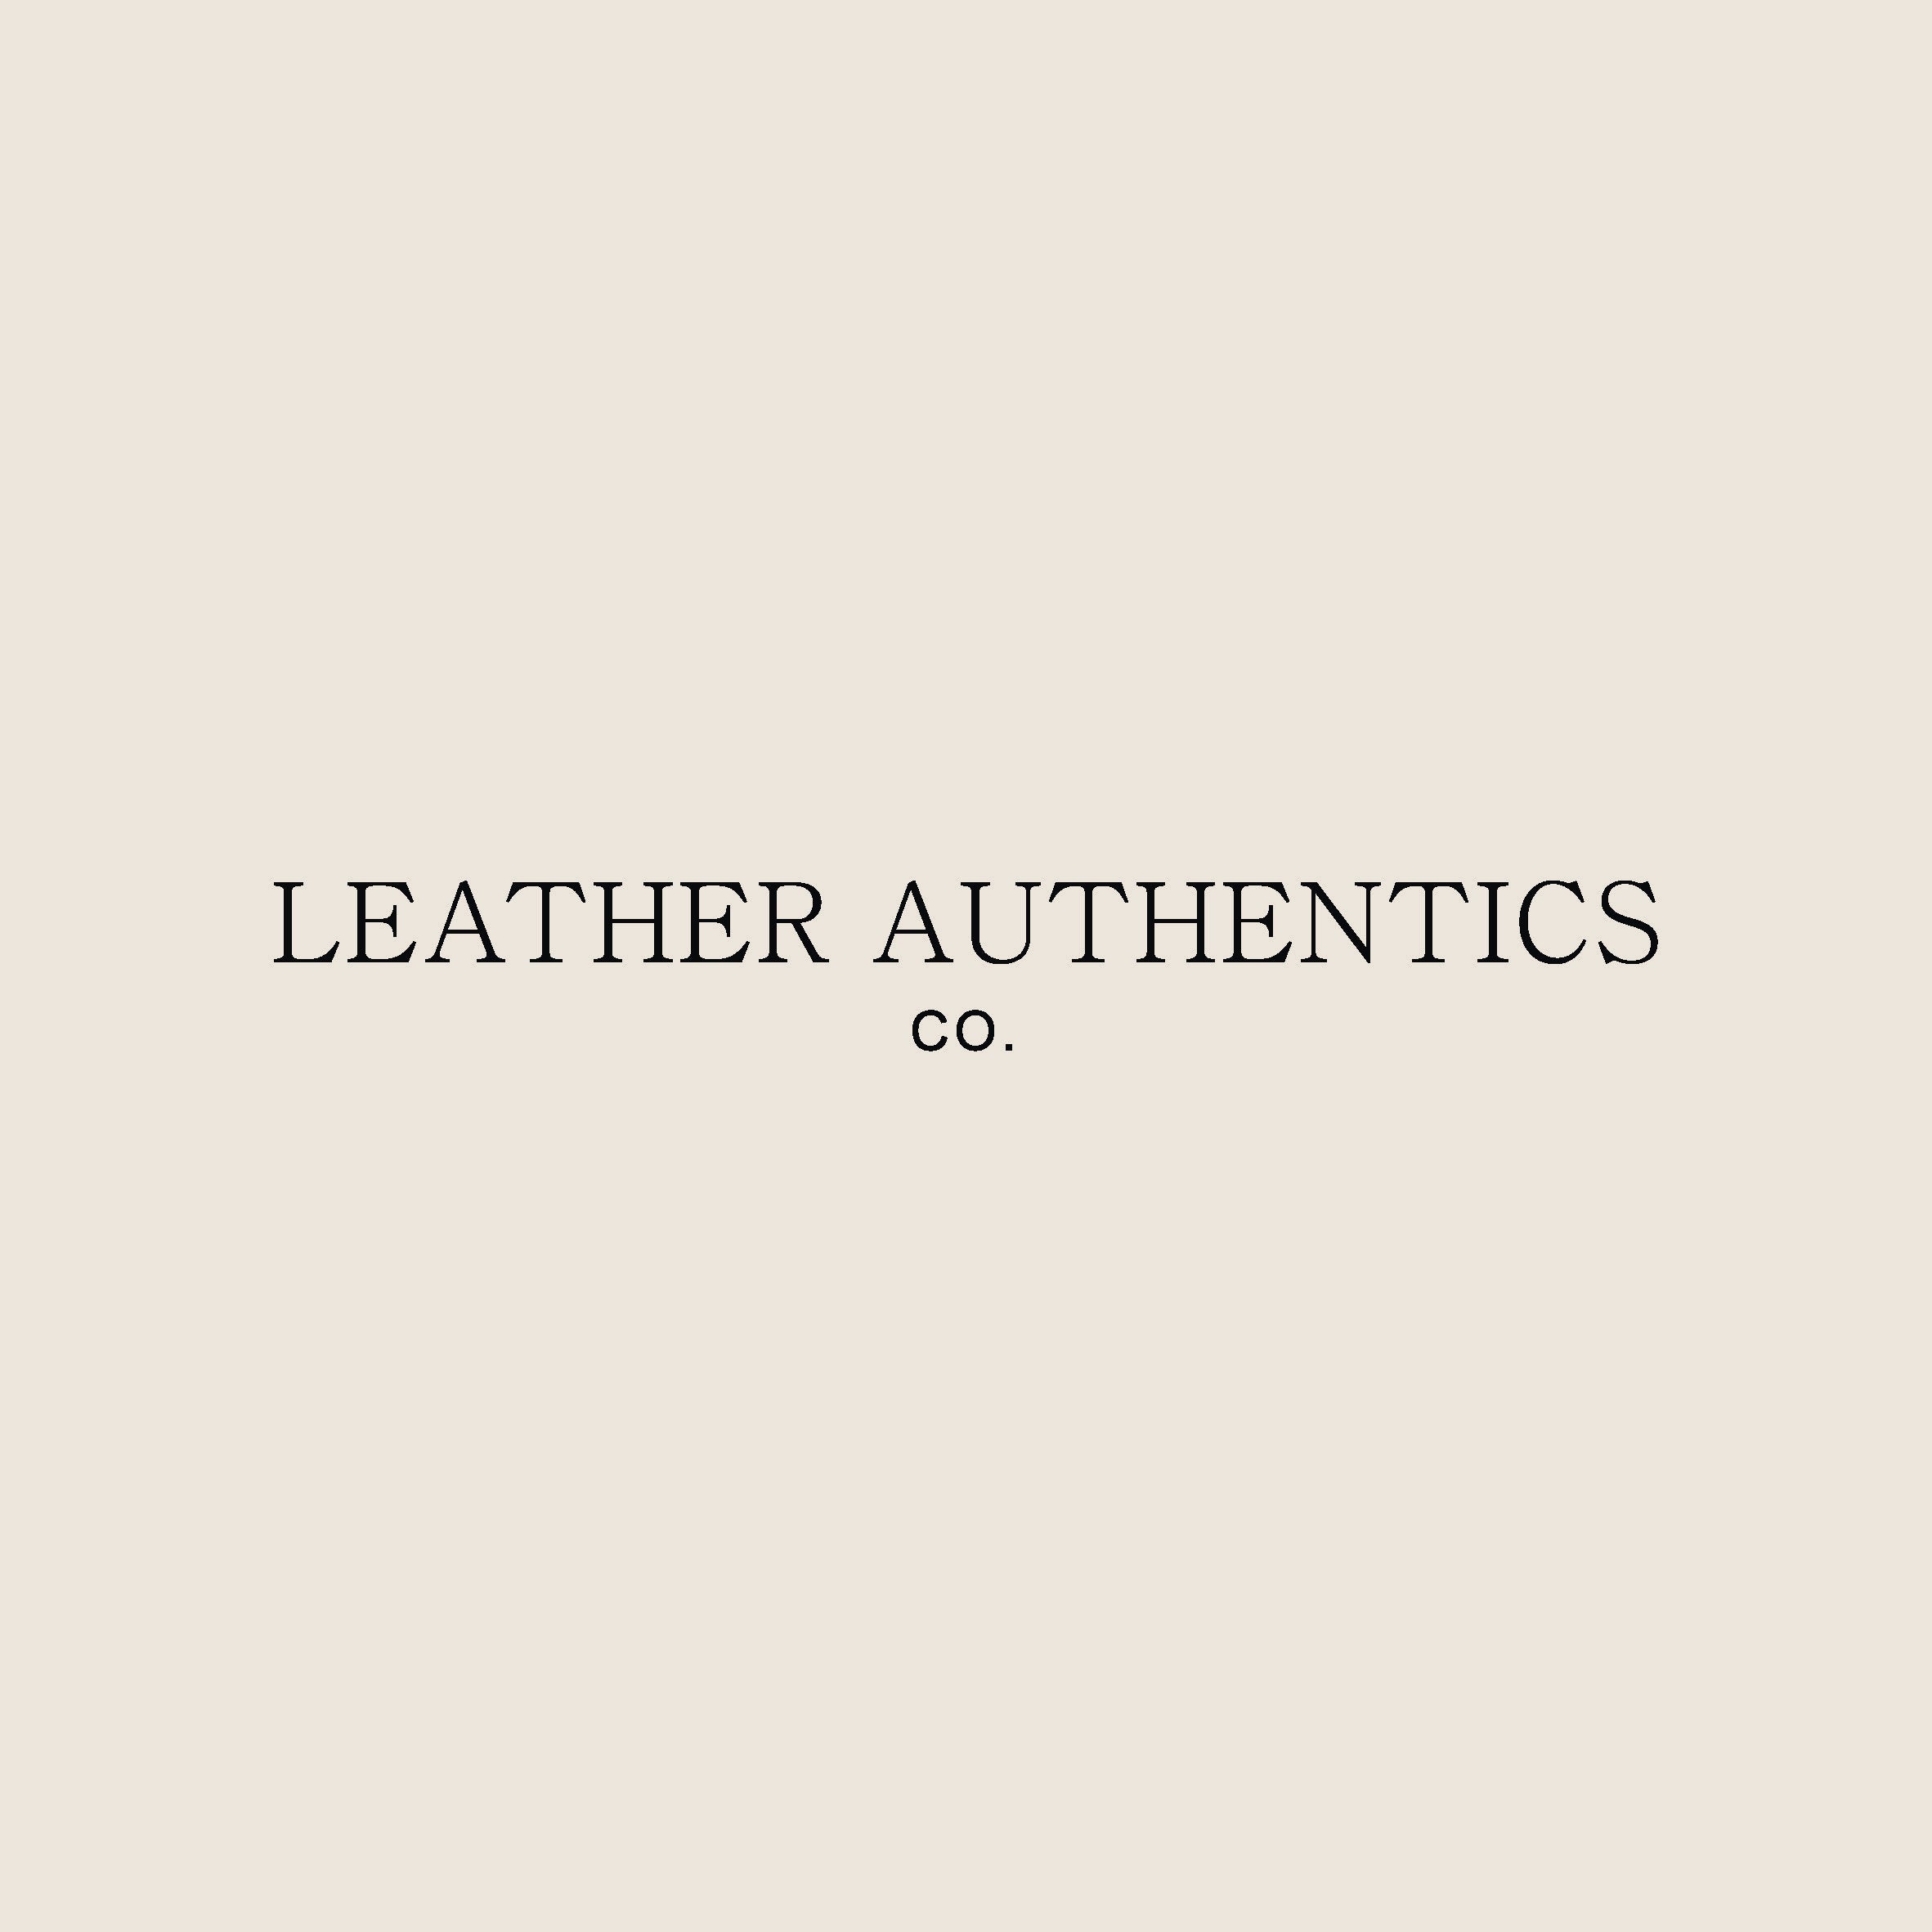 Leather Authentics Co